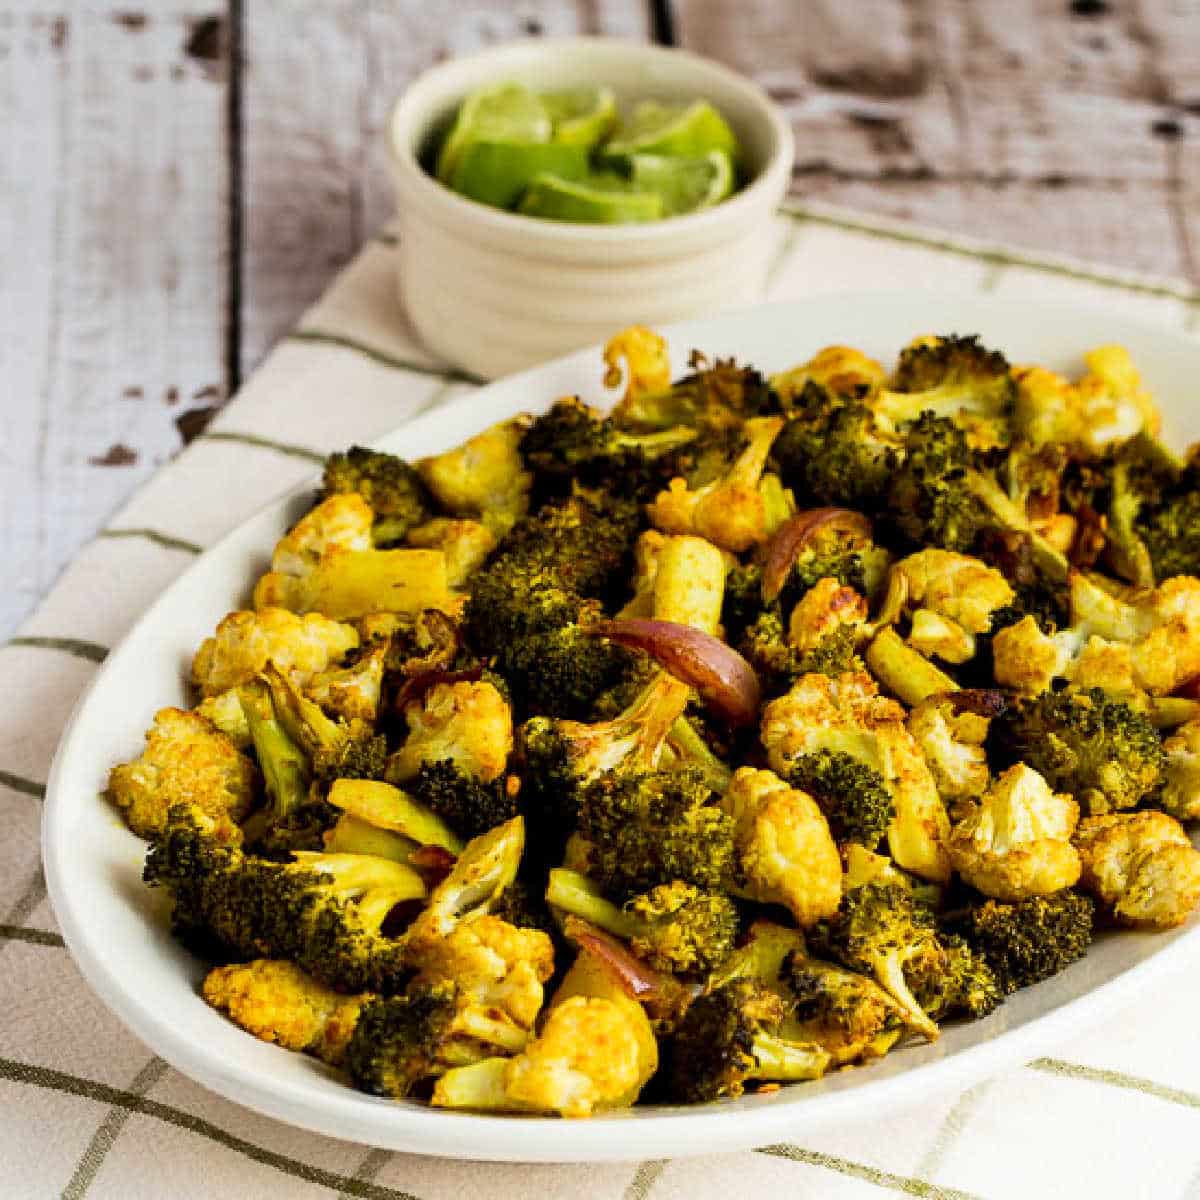 immagine quadrata di broccoli arrostiti e cavolfiore mostrata sul piatto da portata con lime sullo sfondo